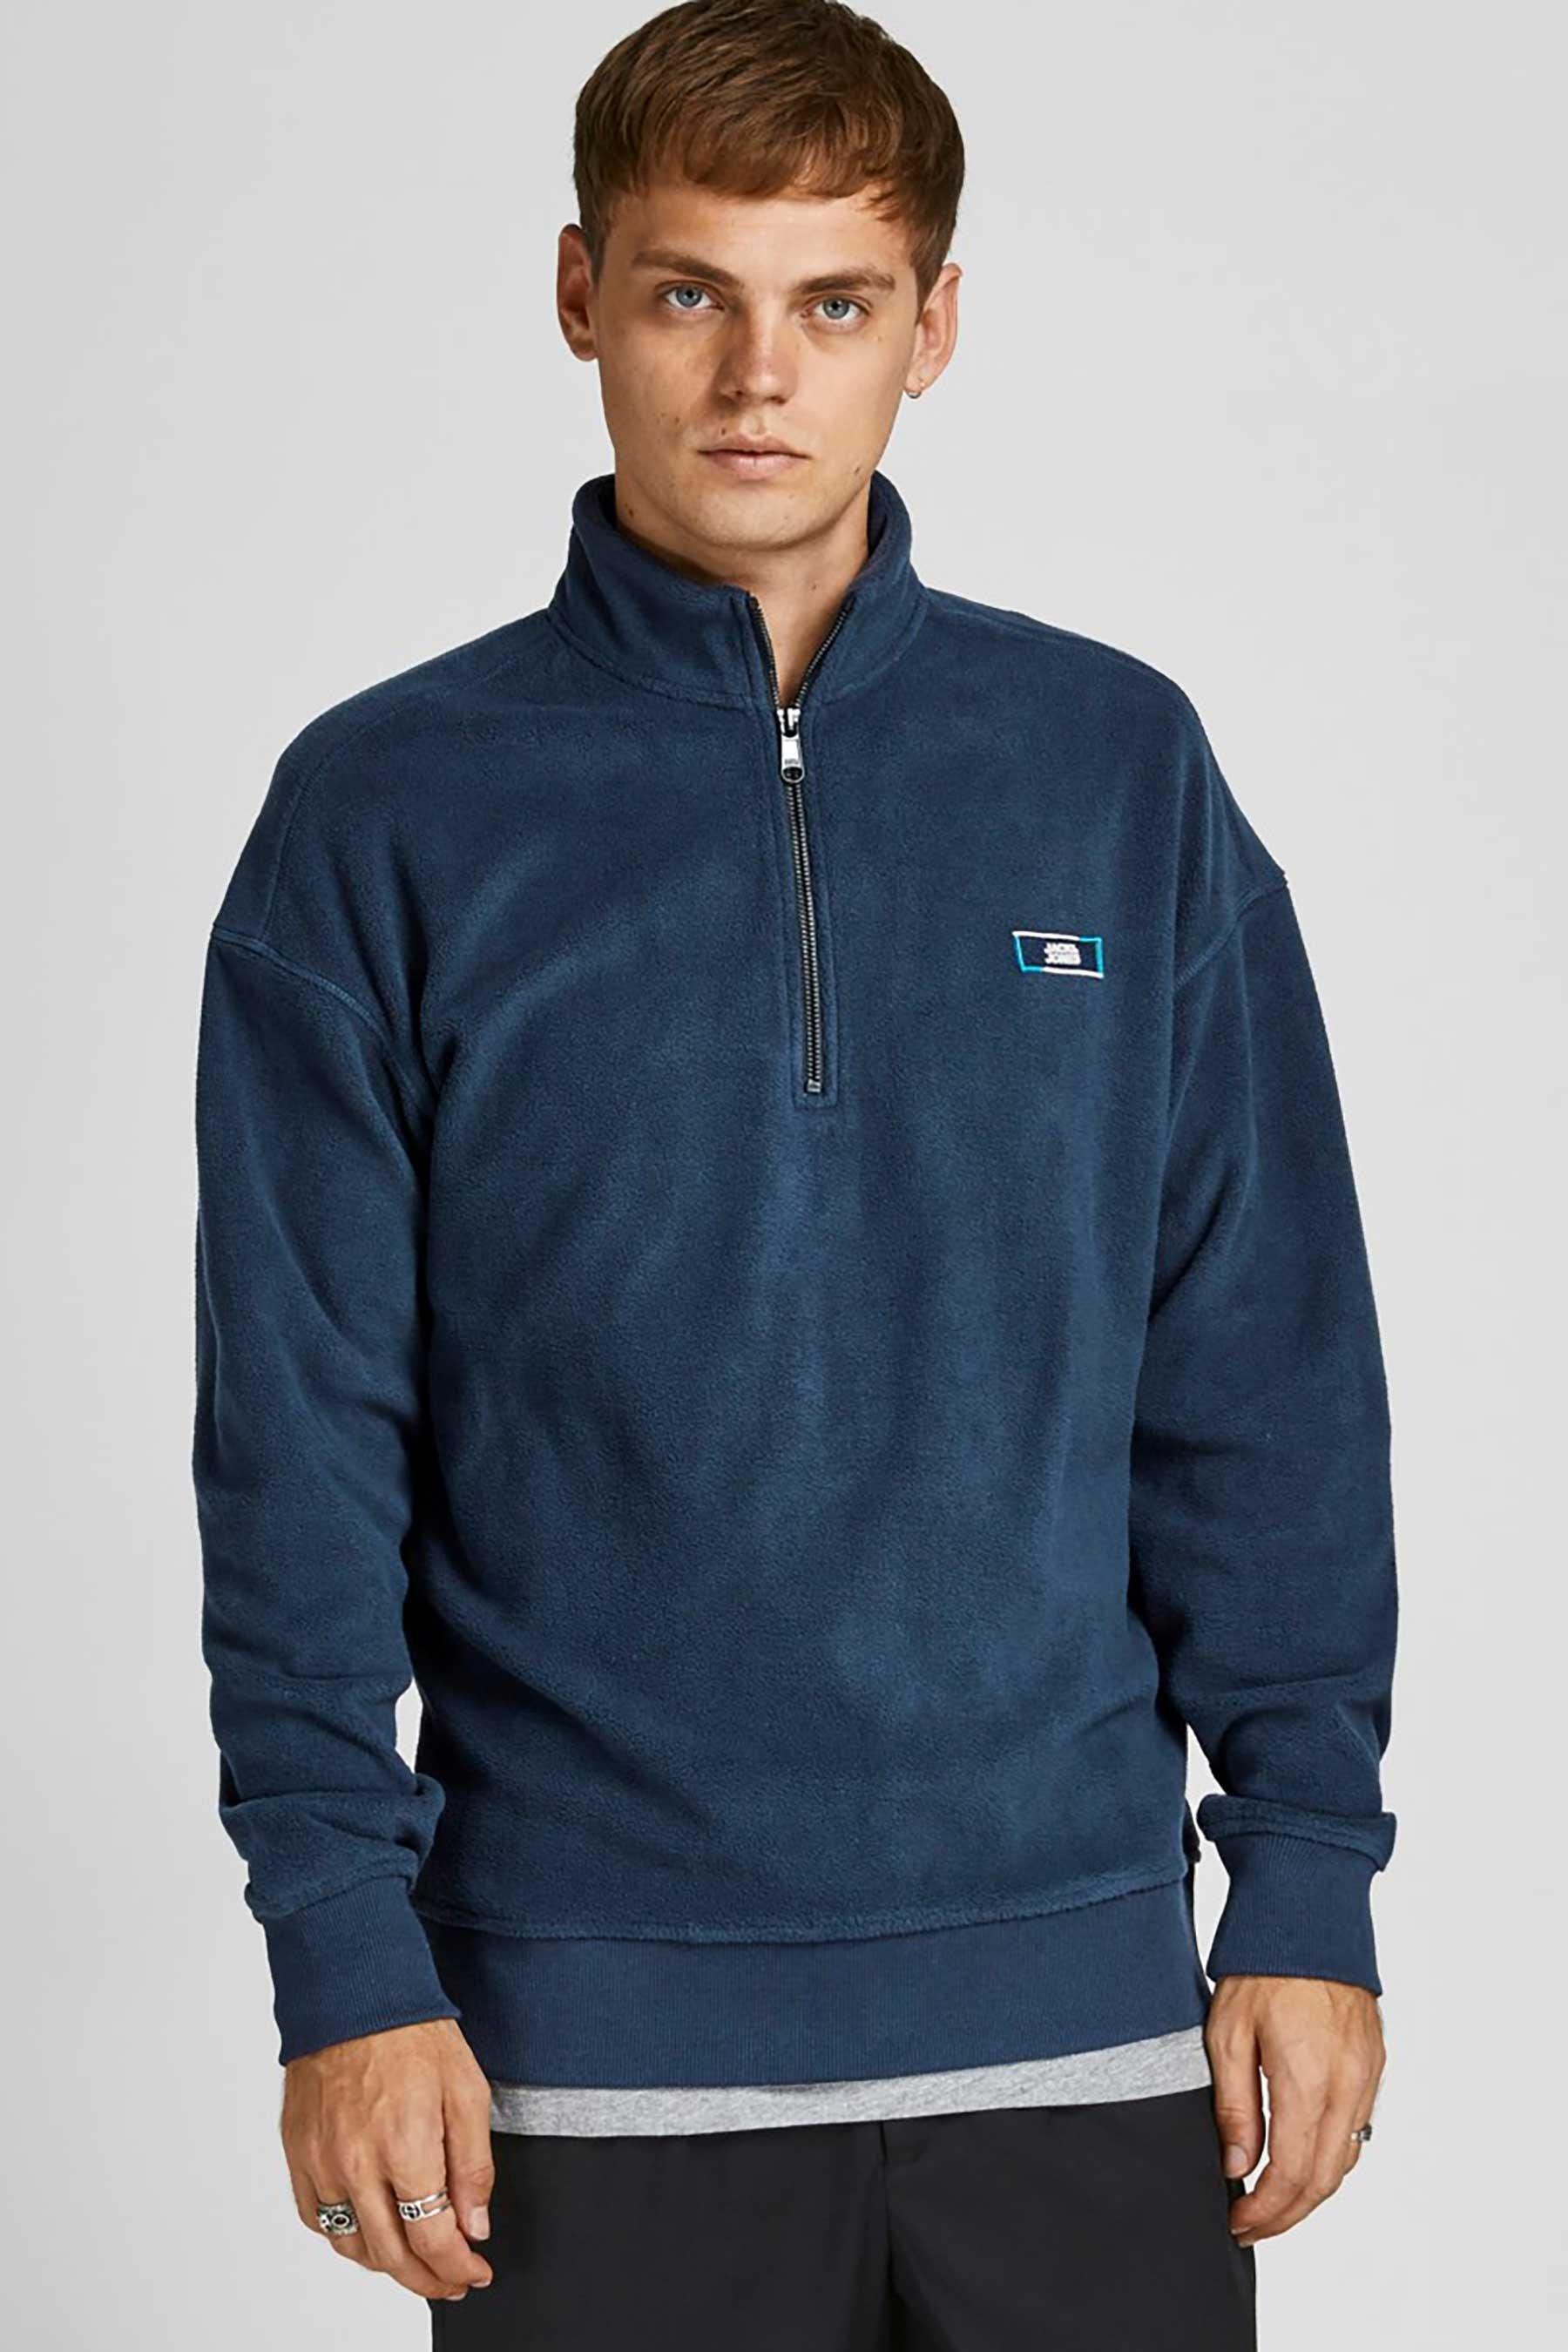 jack and jones classic half zip navy sweatshirt - mens - blue - size: medium